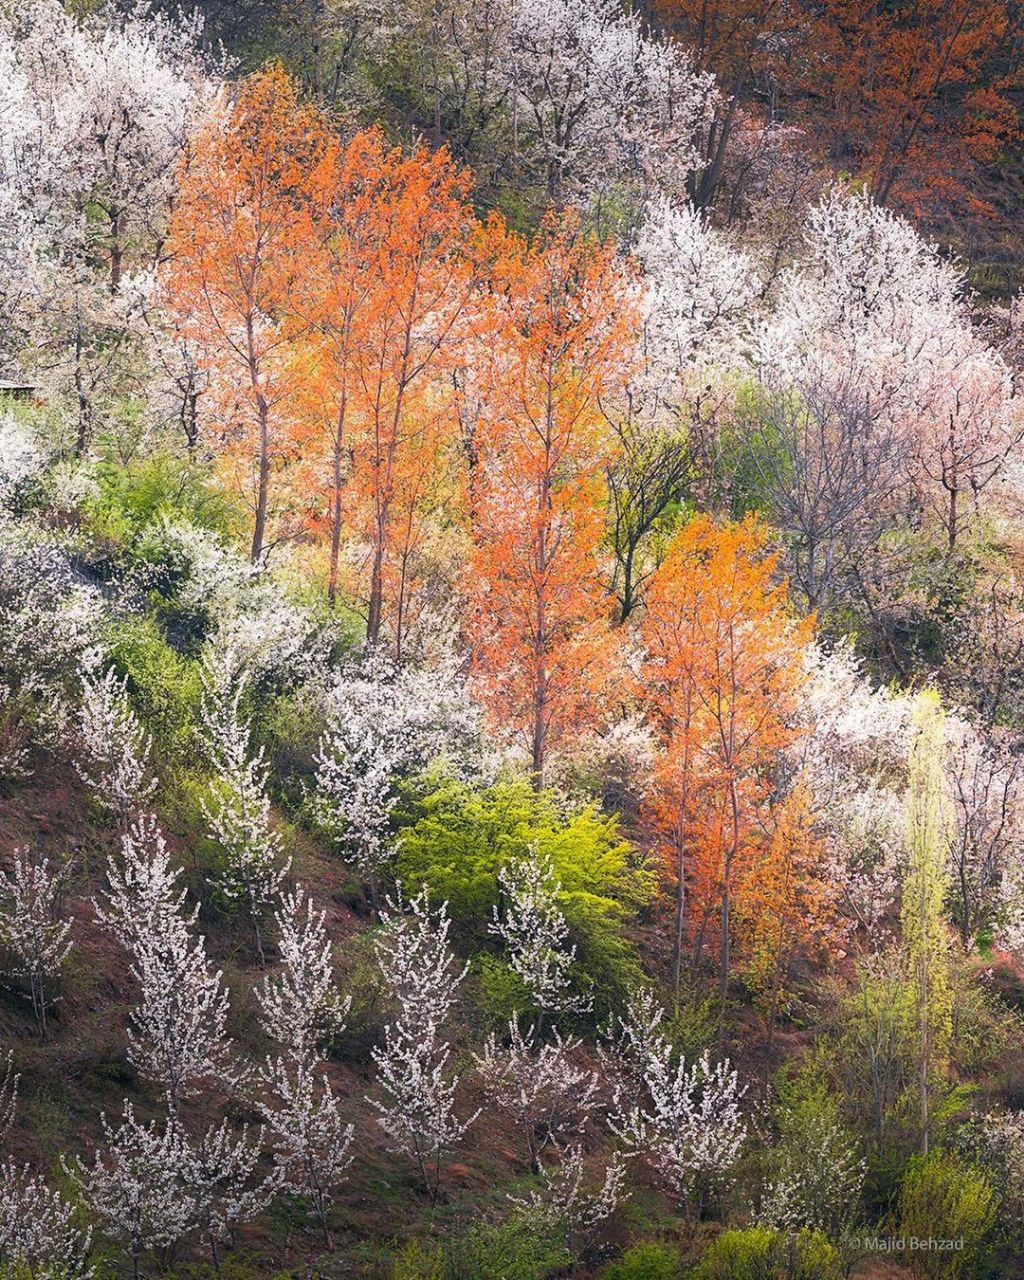 بهار دیدنی در ارتفاعات مازندران + عکس - تلگرام آپ